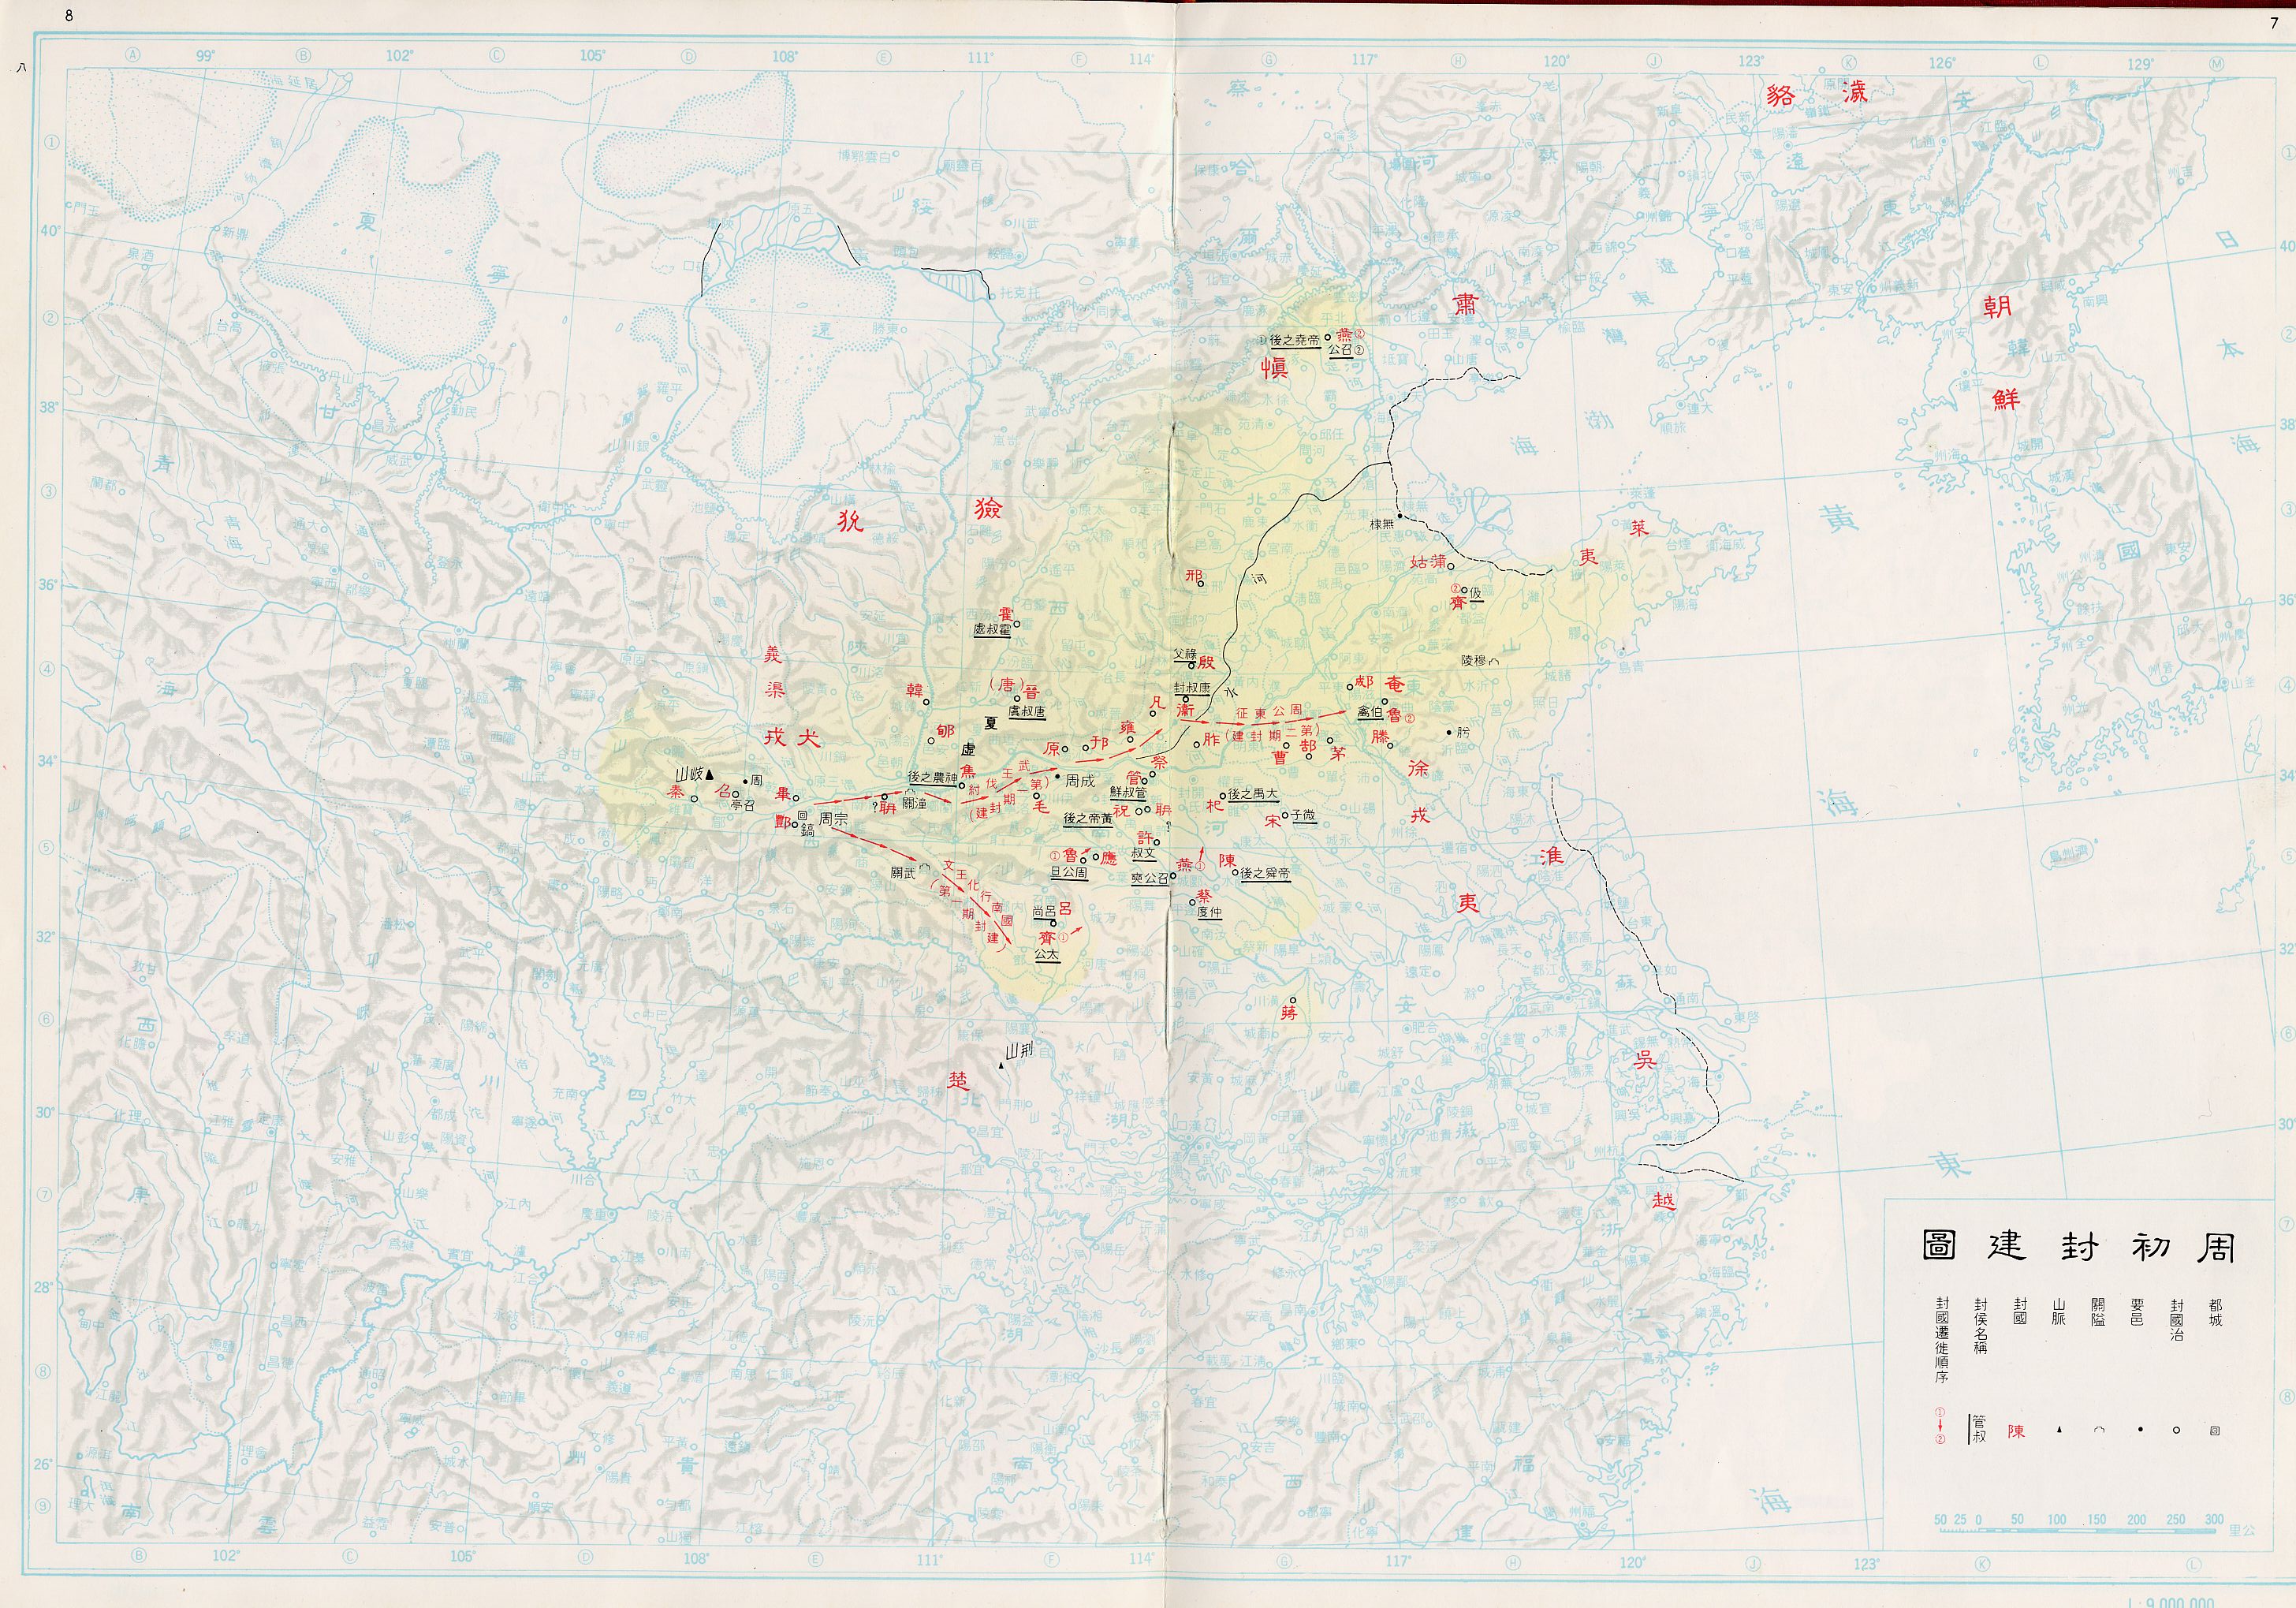 重磅资料 :中国历史地图(超清 )!